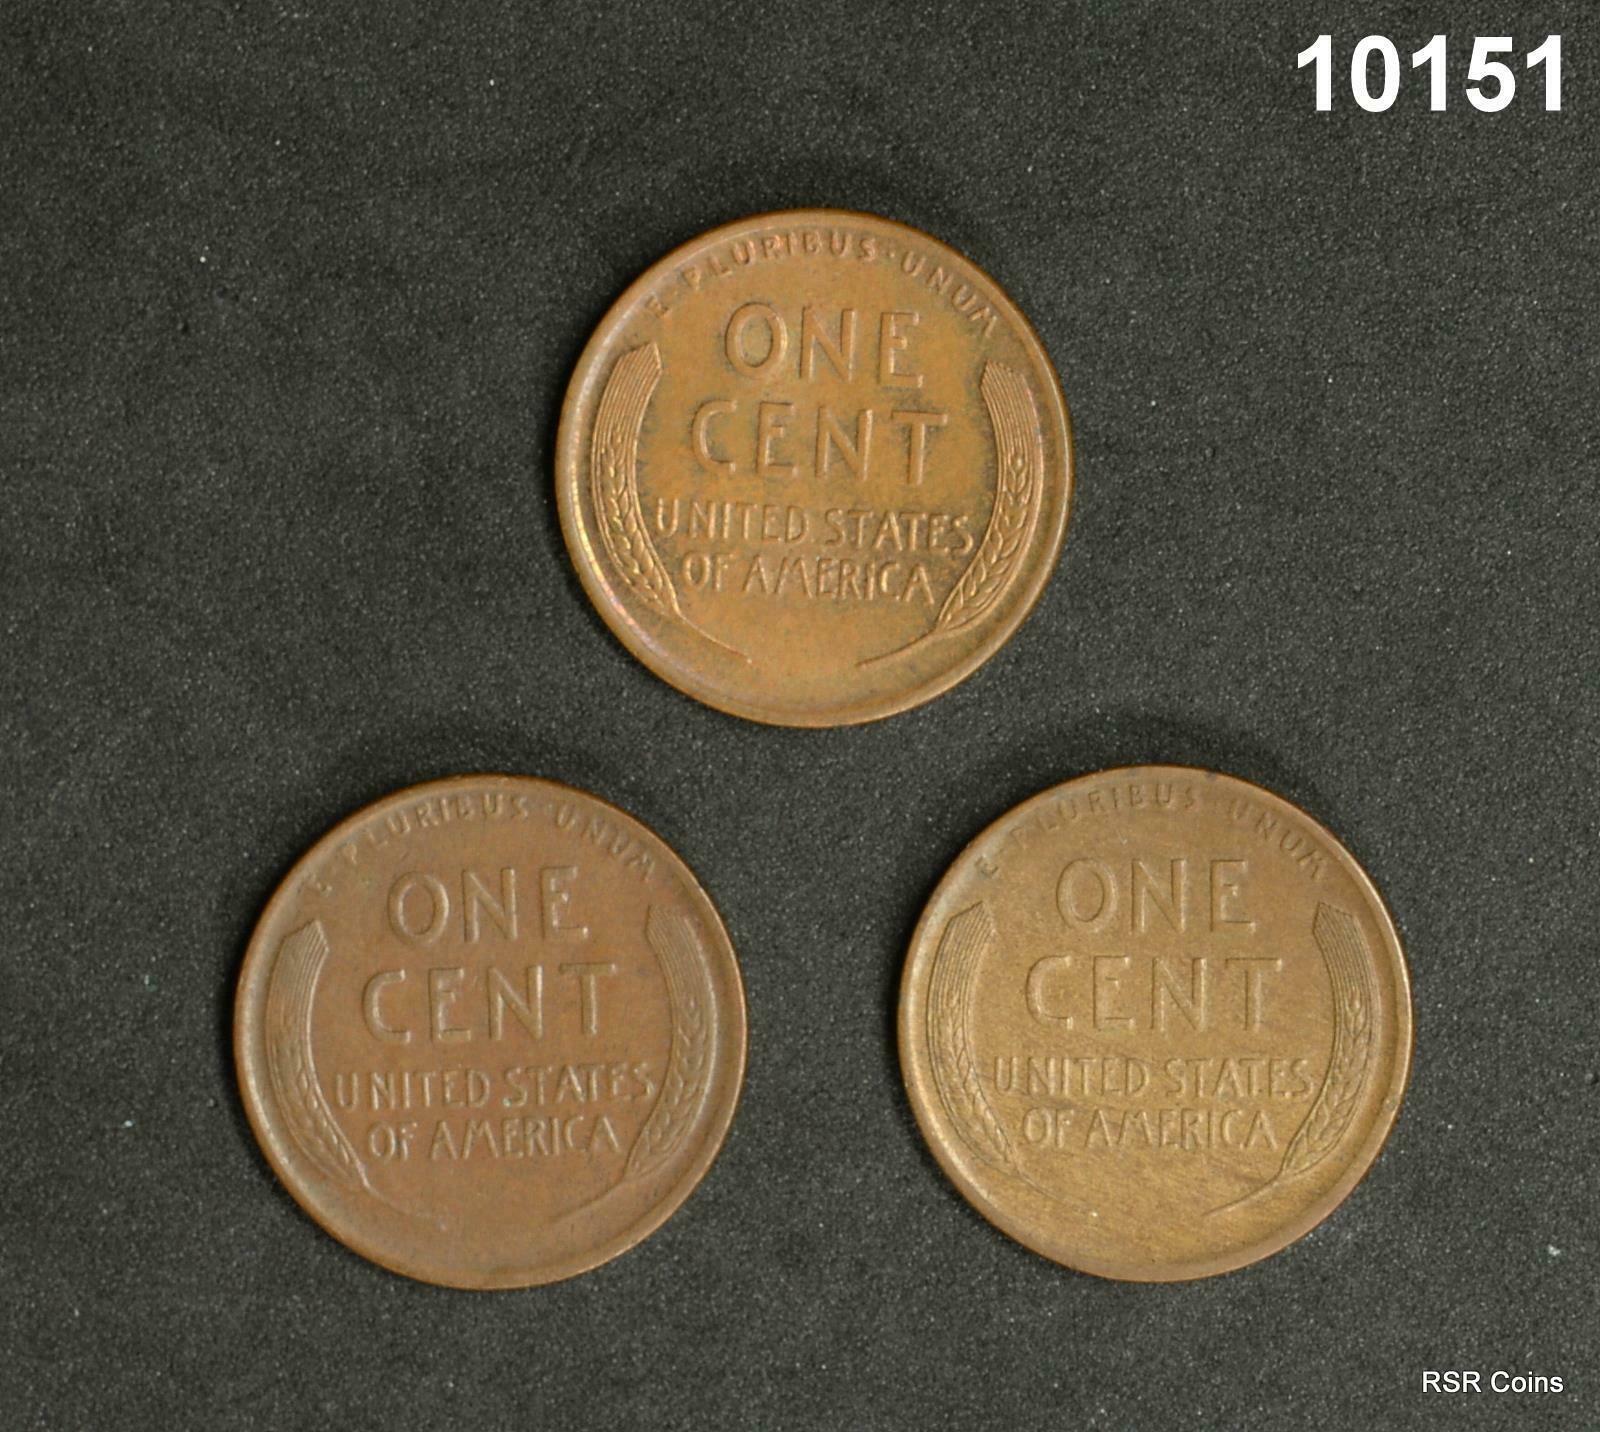 1919 AU++, 1919D AU, 191S AU, 3 COIN LINCOLN CENT LOT ORIGINALS! #10151